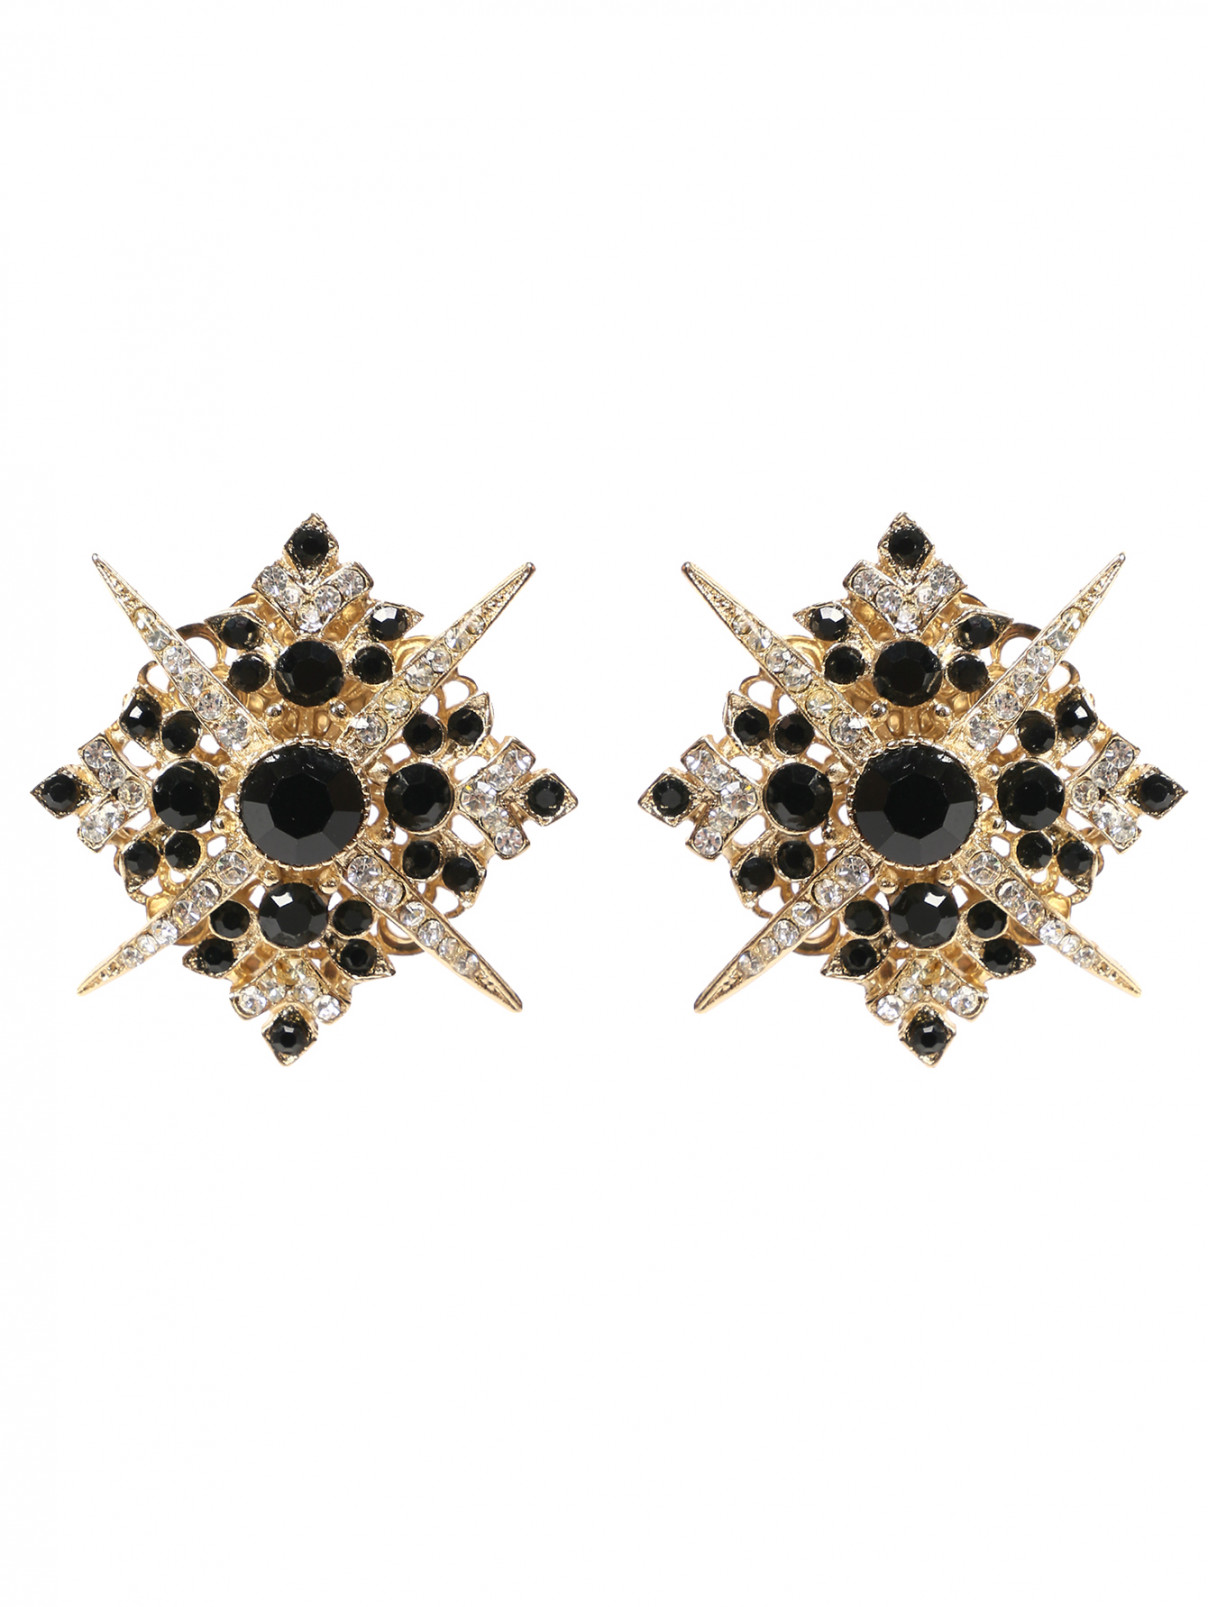 Клипсы из металла декорированные кристаллами Thot Gioielli  –  Общий вид  – Цвет:  Черный